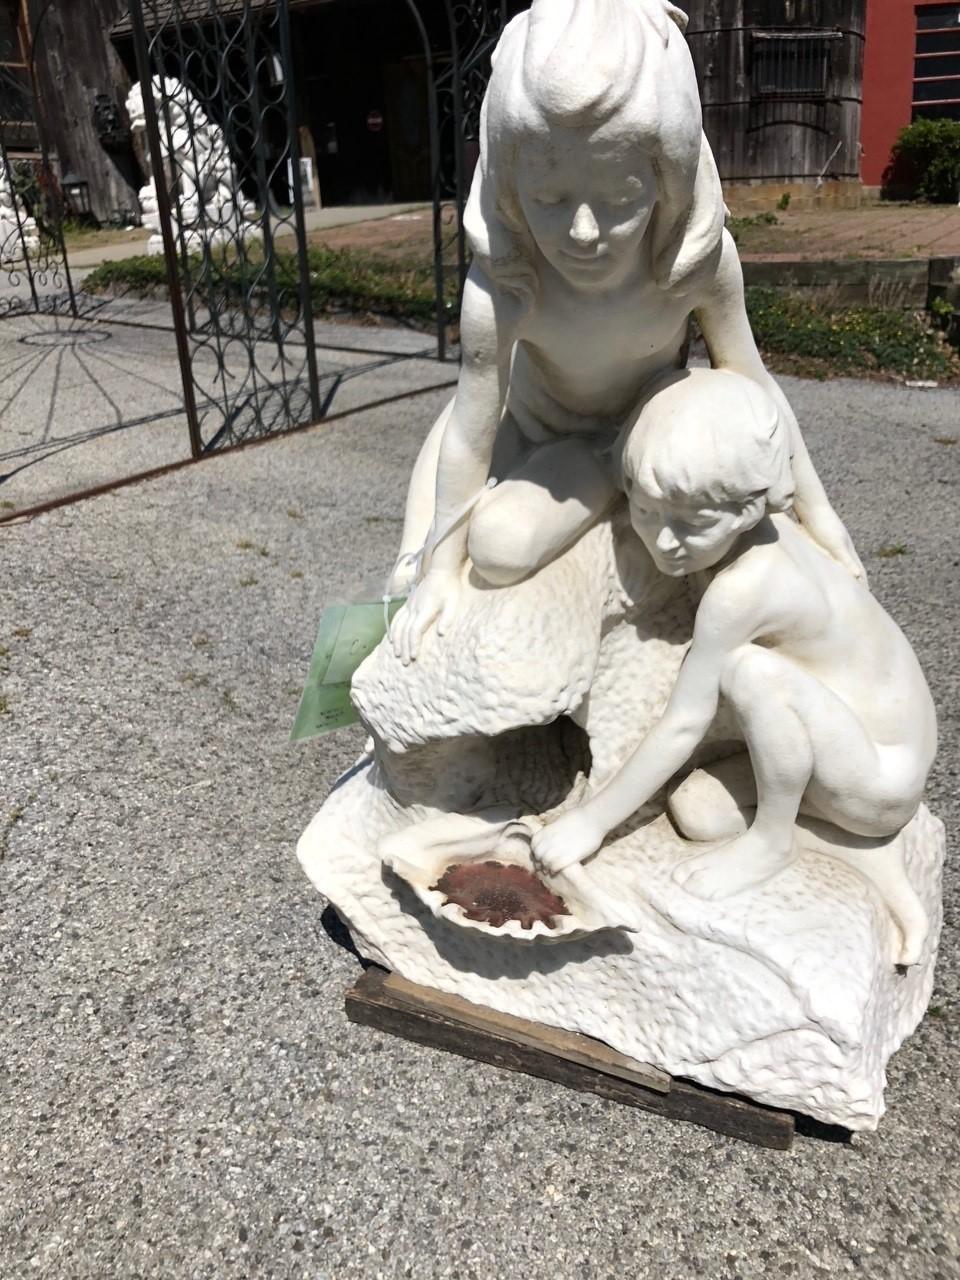 Marmorbrunnen aus dem frühen 20. Jahrhundert mit einem Mädchen und einem Jungen, die eine Muschel halten, während das Wasser aus den Felsen kommt. Während der Junge die Muschel hält, schaut das Mädchen hinüber, während das Wasser fließt. Es ist ein